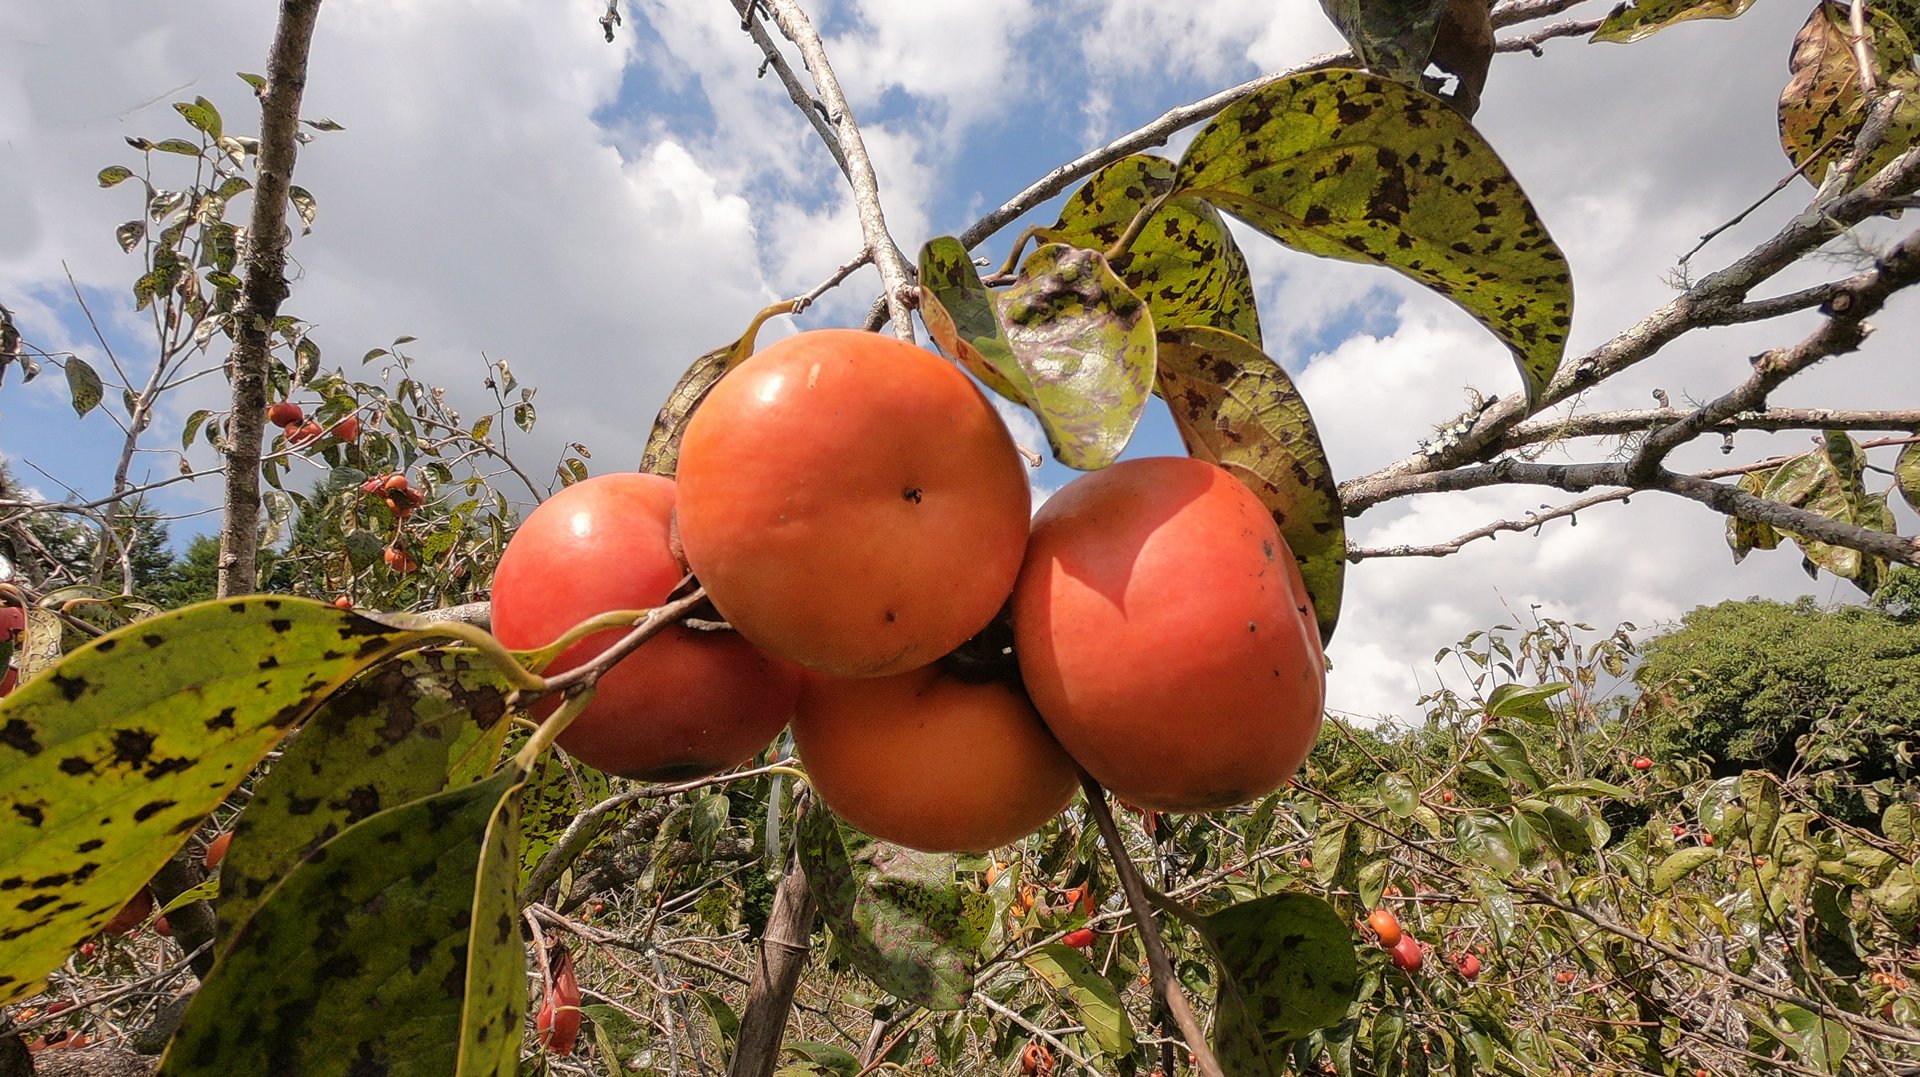 Bate e volta de São Paulo: conheça o circuito das frutas na zona rural do estado